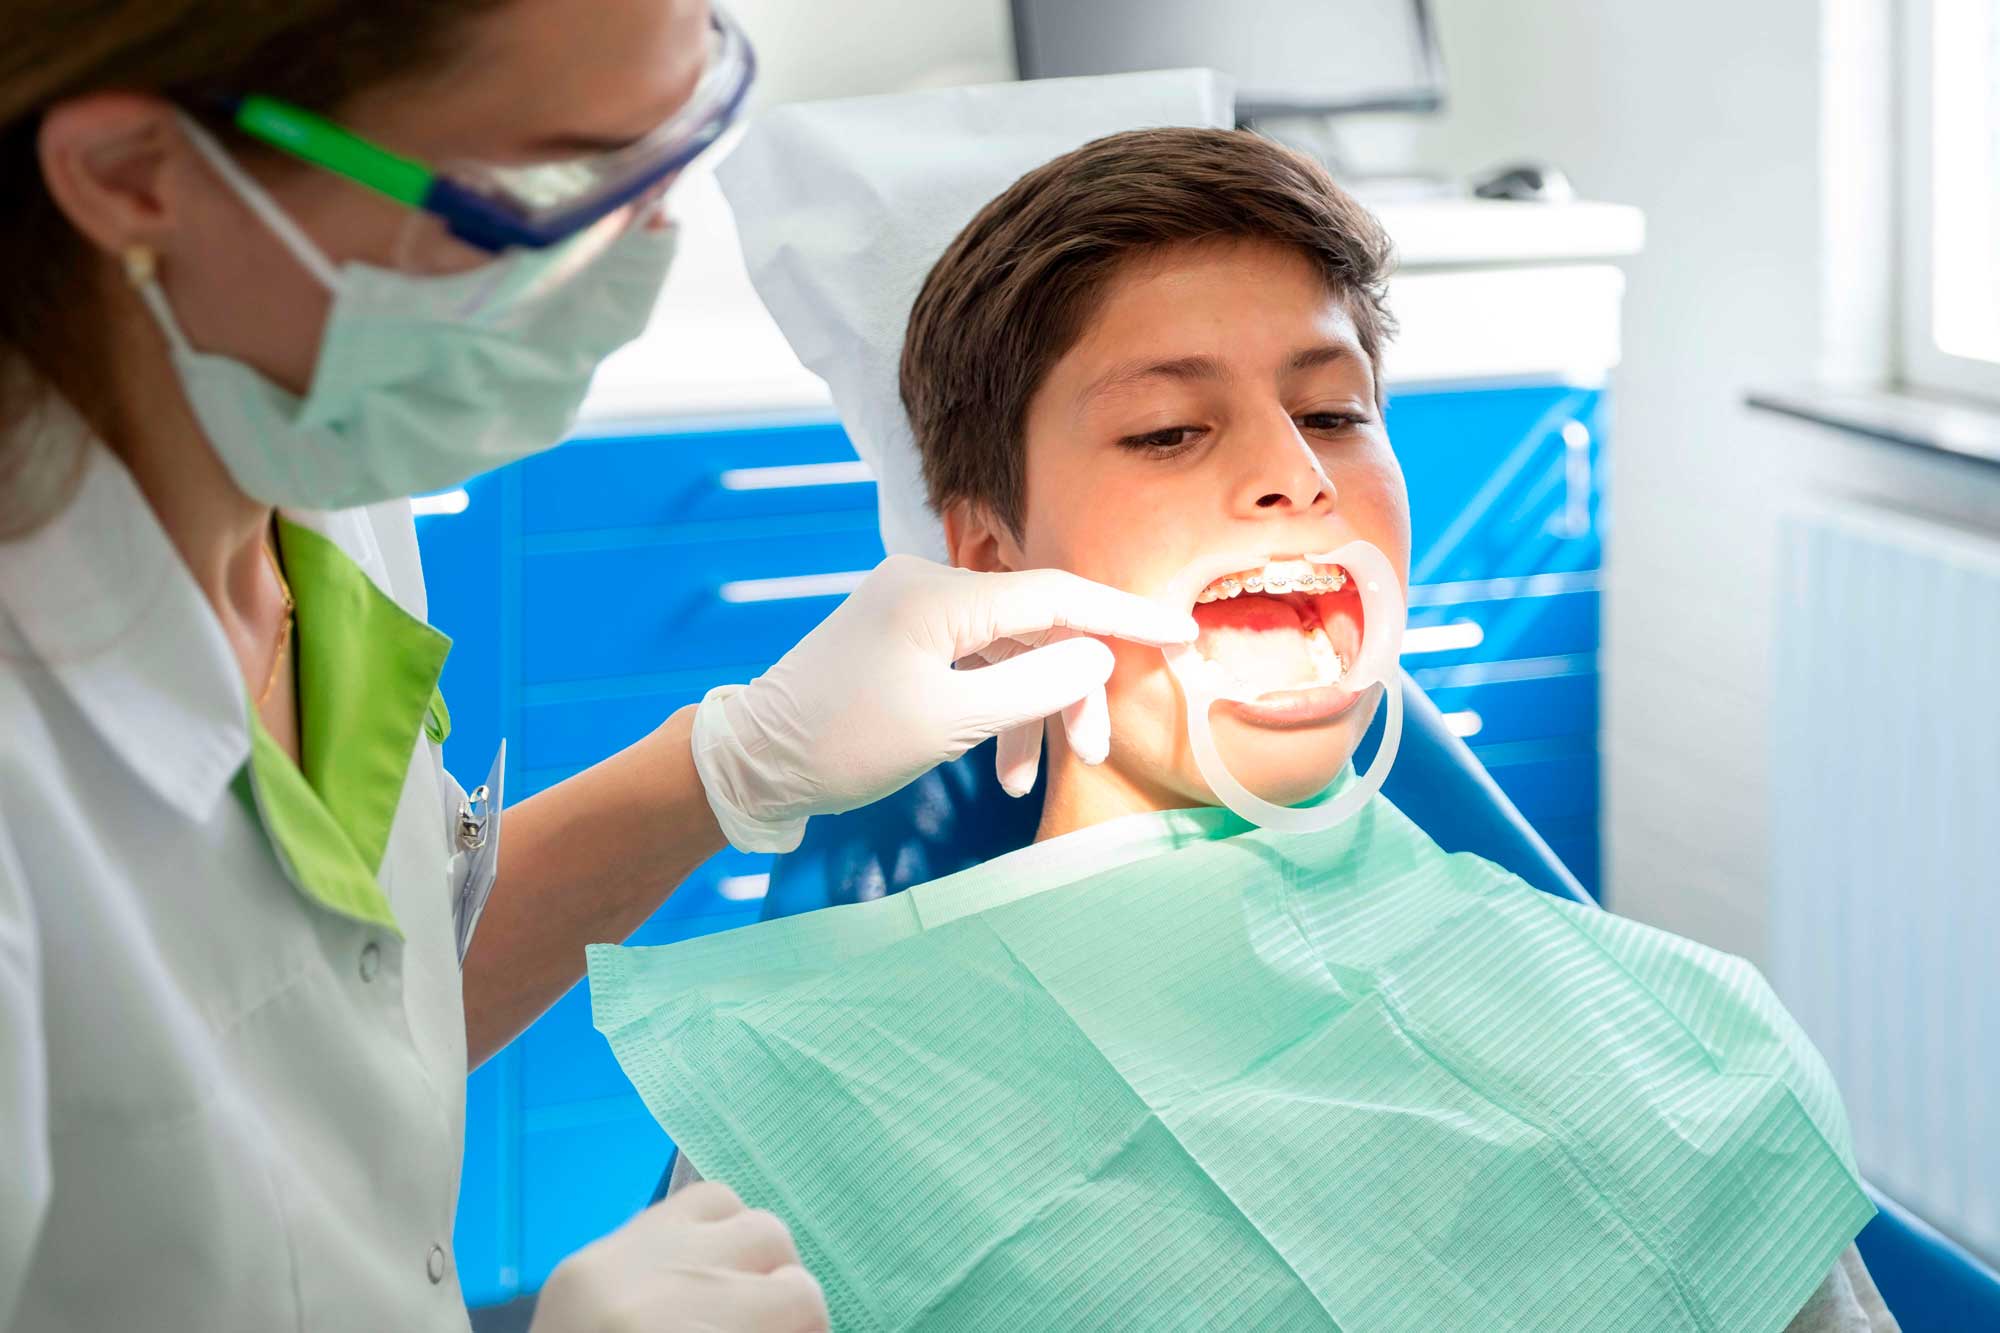 orthodontie-kinderen-behandeling-aanmelden-fokkerstraat-mondzorgpraktijk-tandarts-orthodontie-spoeddienst-assen-bellen-afspraak-brackets-beugel-page-title-bg | beugelproblemen